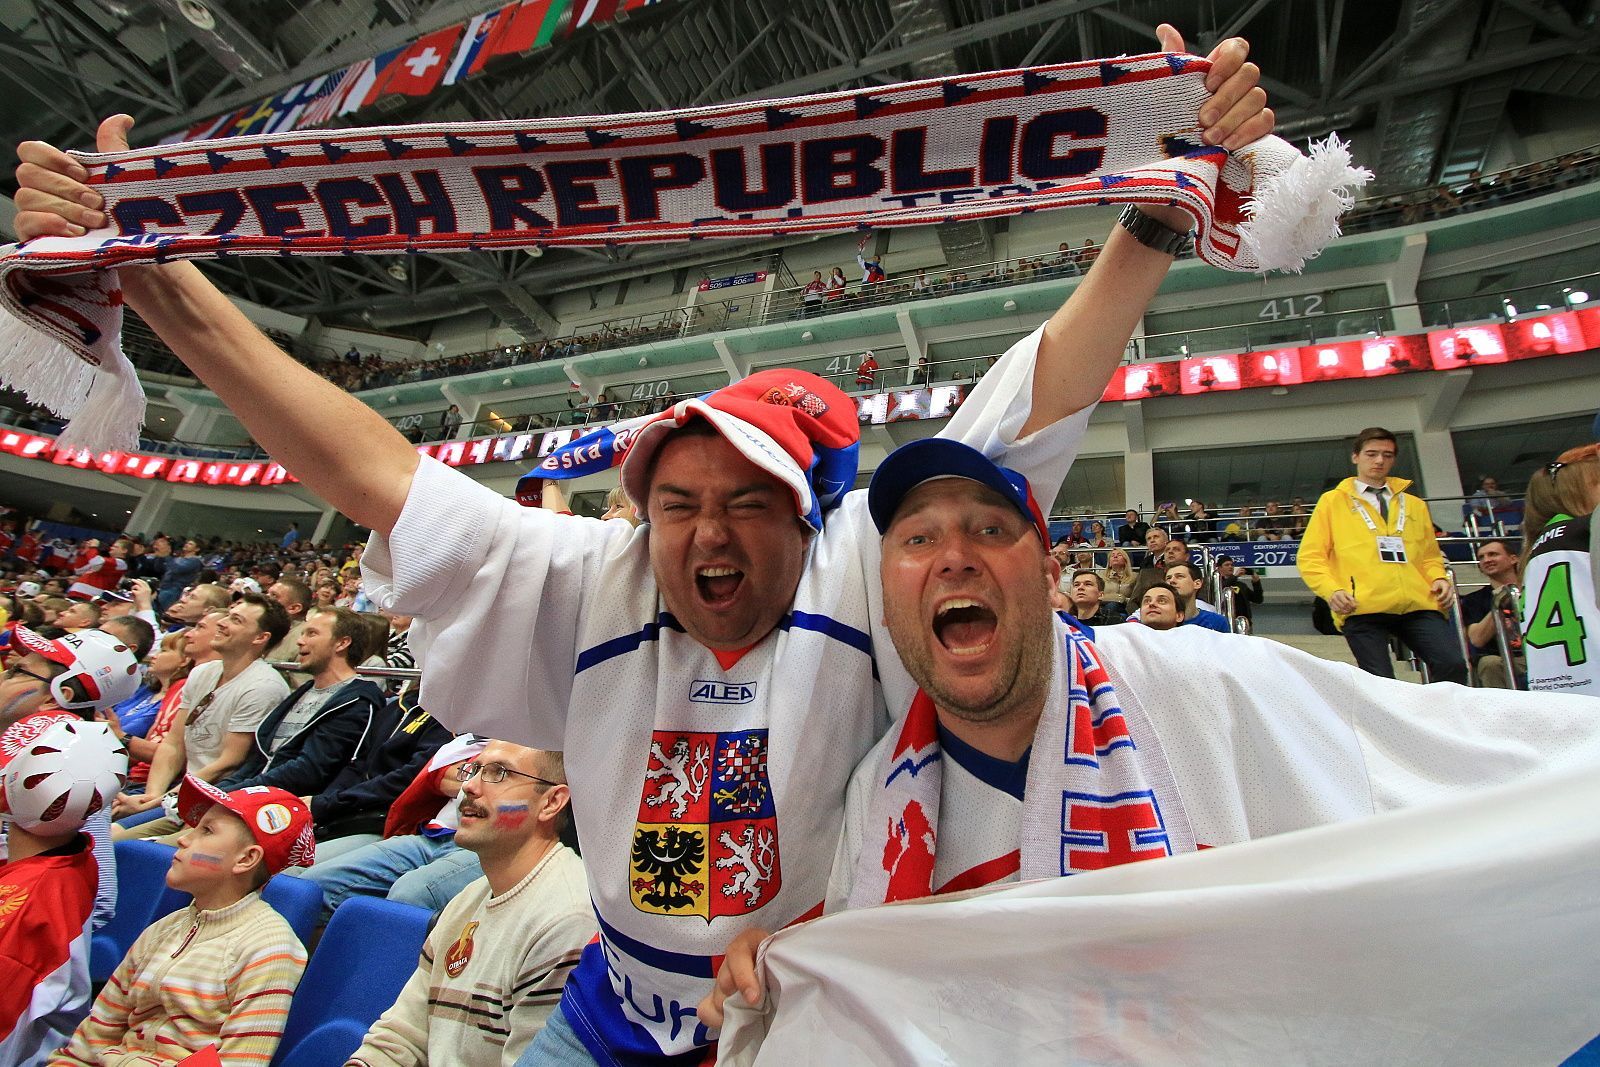 MS 2016, Česko-Švédsko: čeští fanoušci